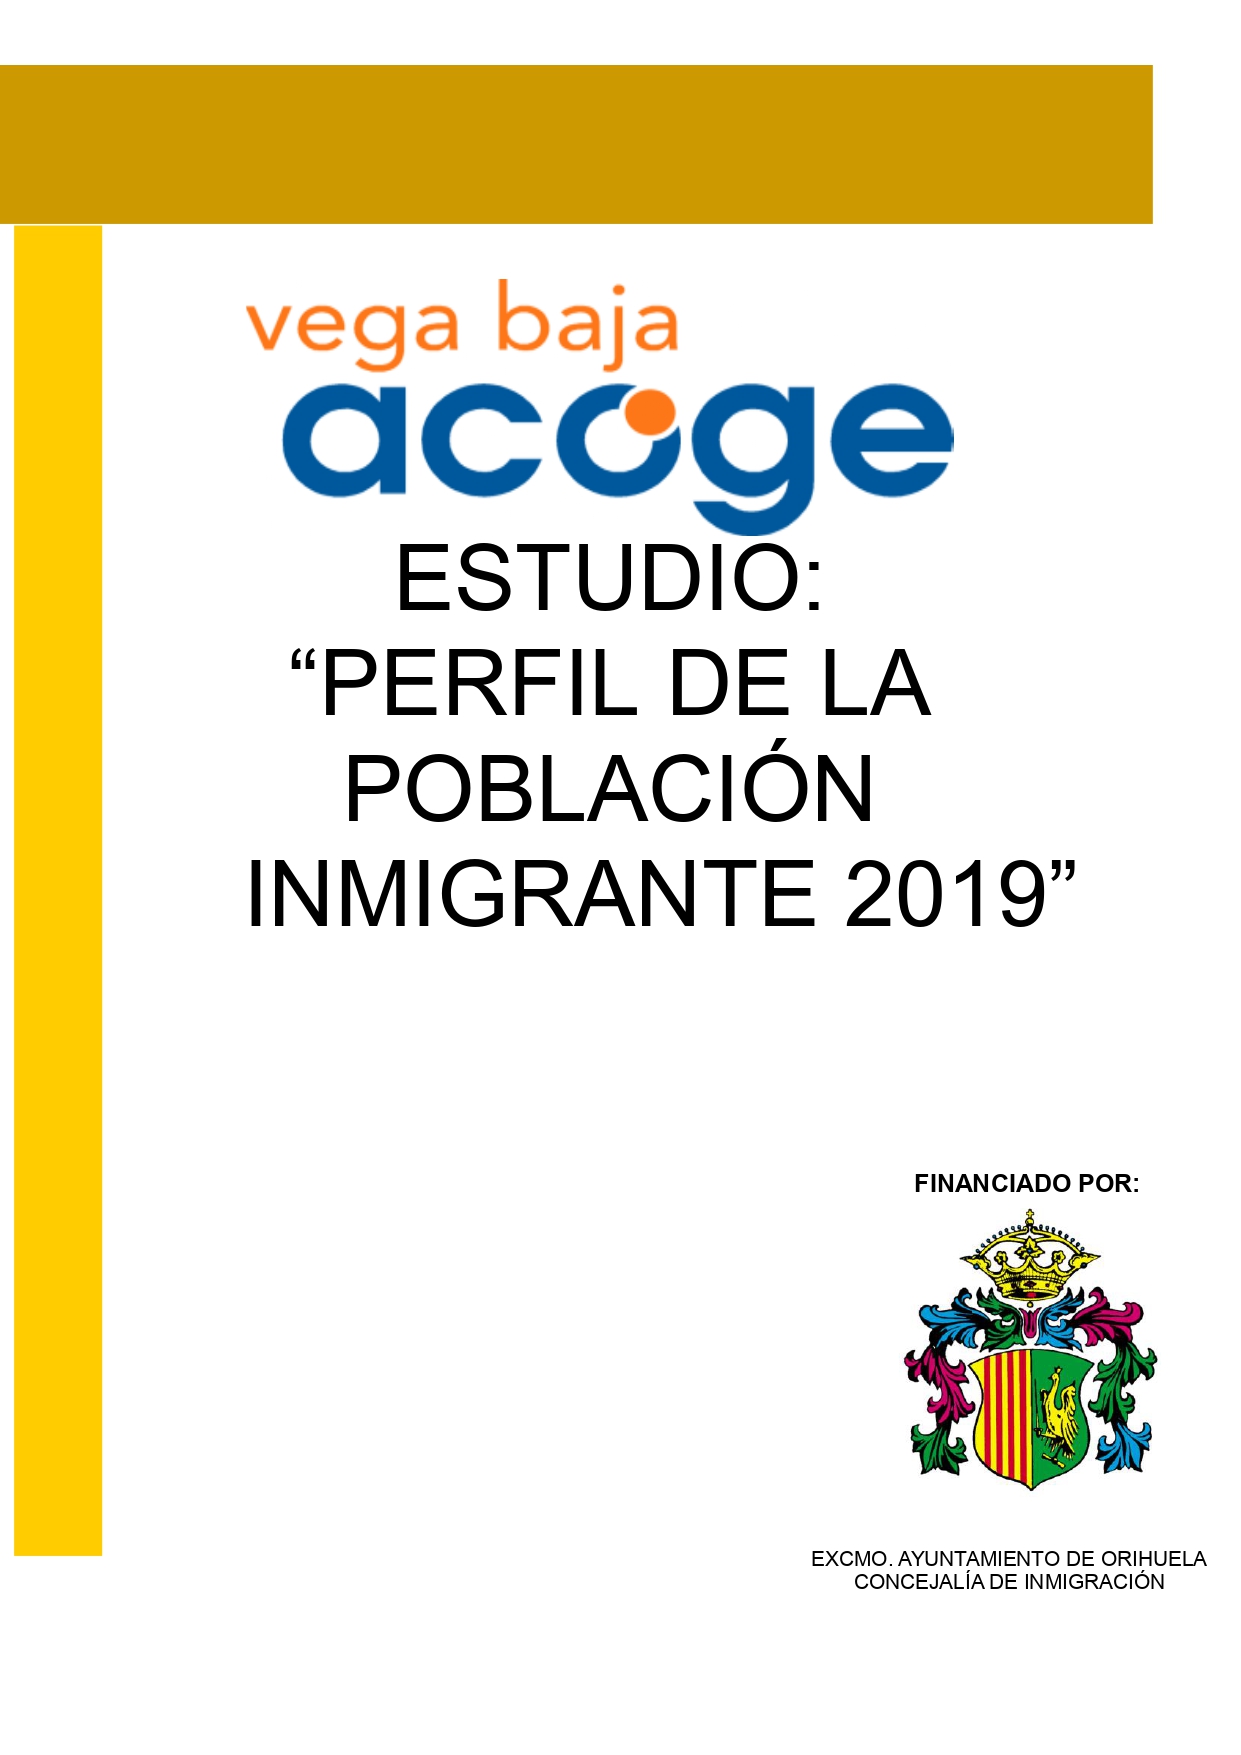 Estudio Vega Baja Acoge 2019